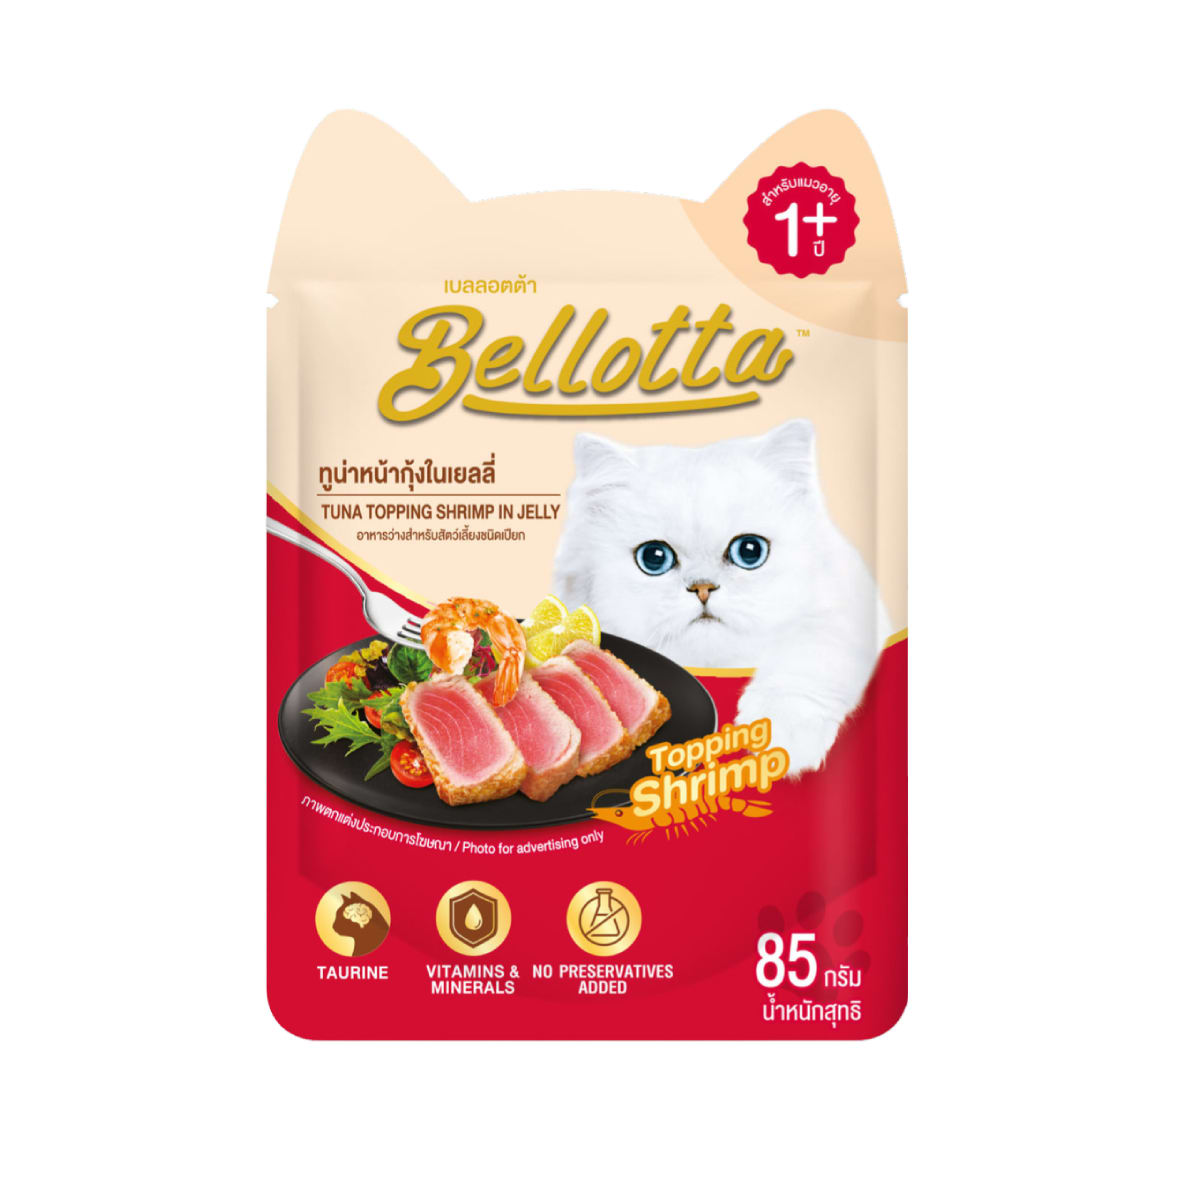 Bellotta เบลลอตต้า อาหารเปียก แบบเพ้าช์ สำหรับแมวโตทุกสายพันธุ์ สูตรทูน่าหน้ากุ้งในเยลลี่ 85 g_1